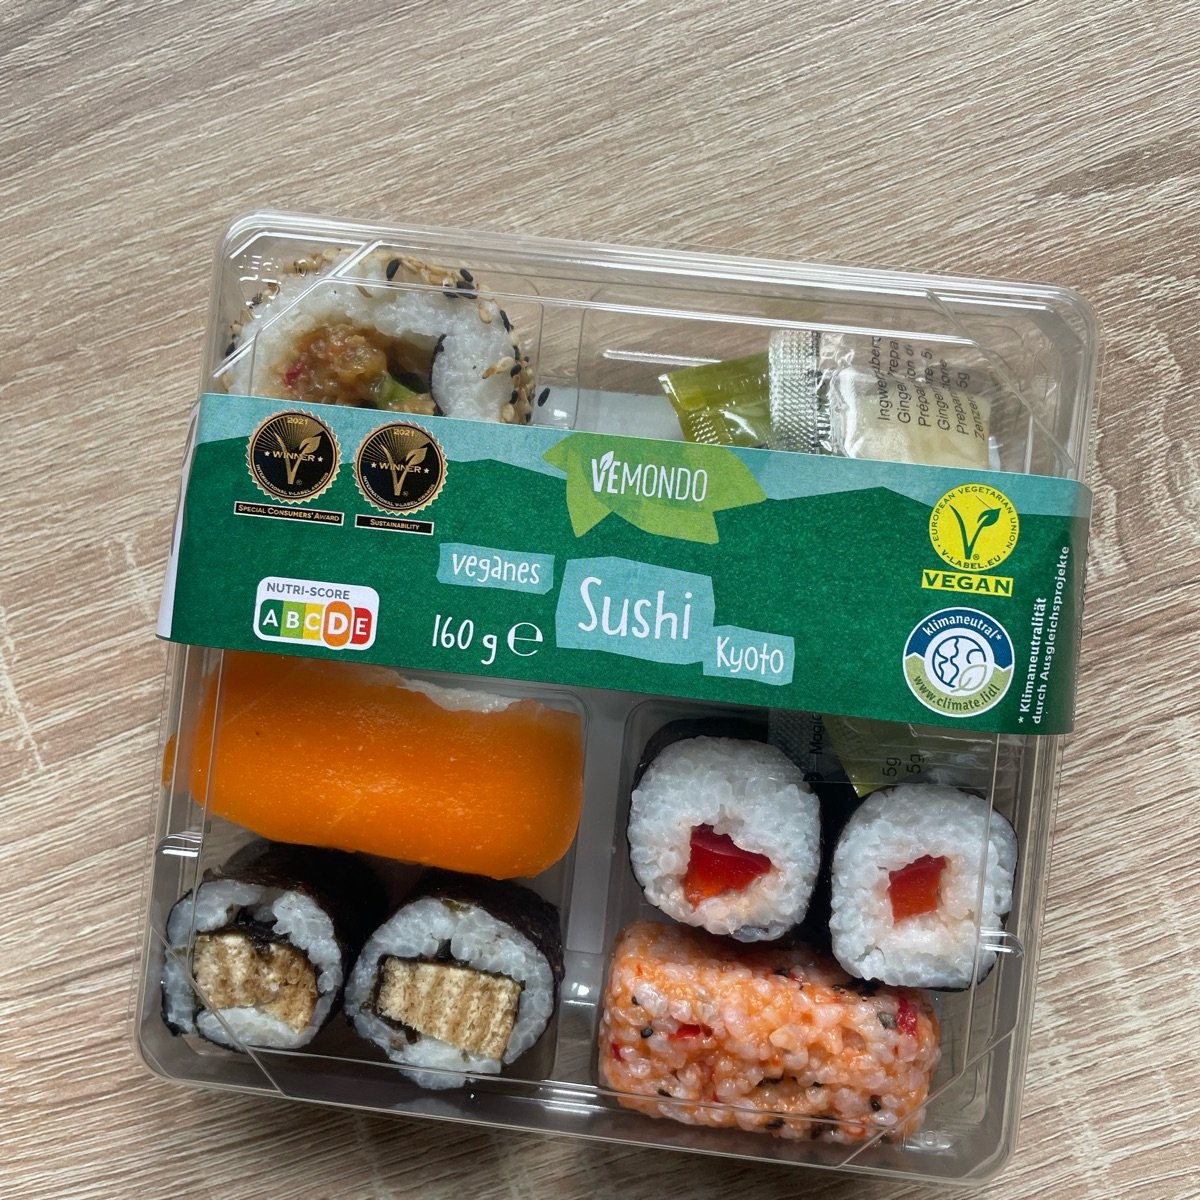 Vemondo Veganes Sushi Kyoto Reviews | abillion